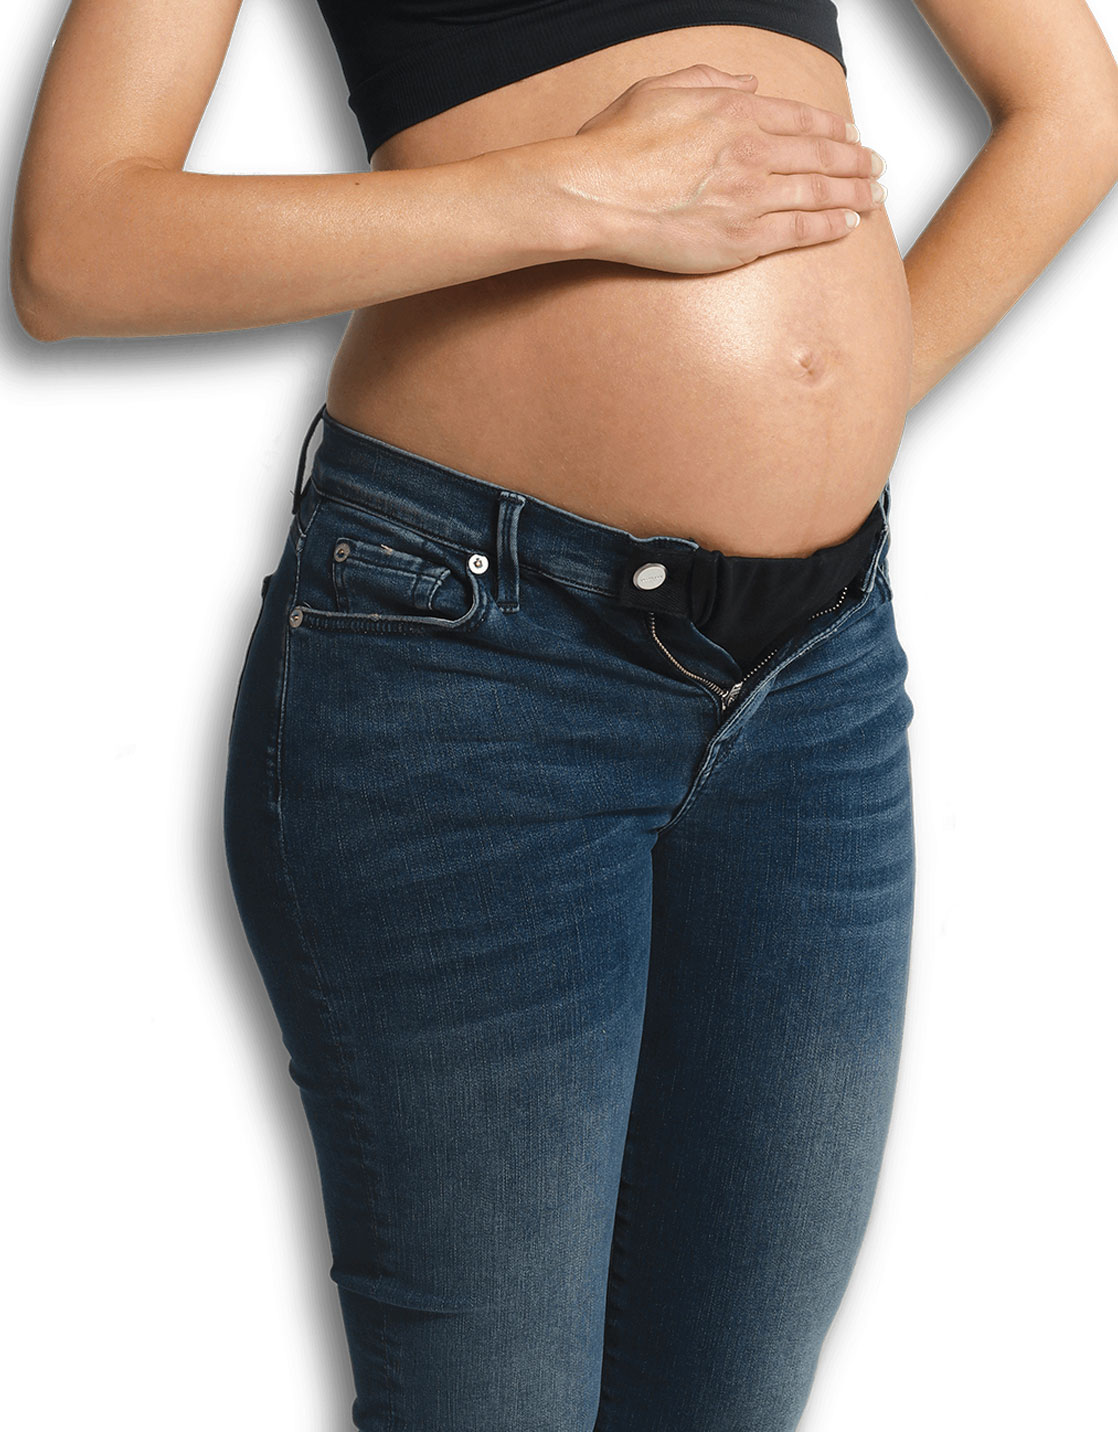 Extension de pantalon élastique et ajustable pour femme enceinte